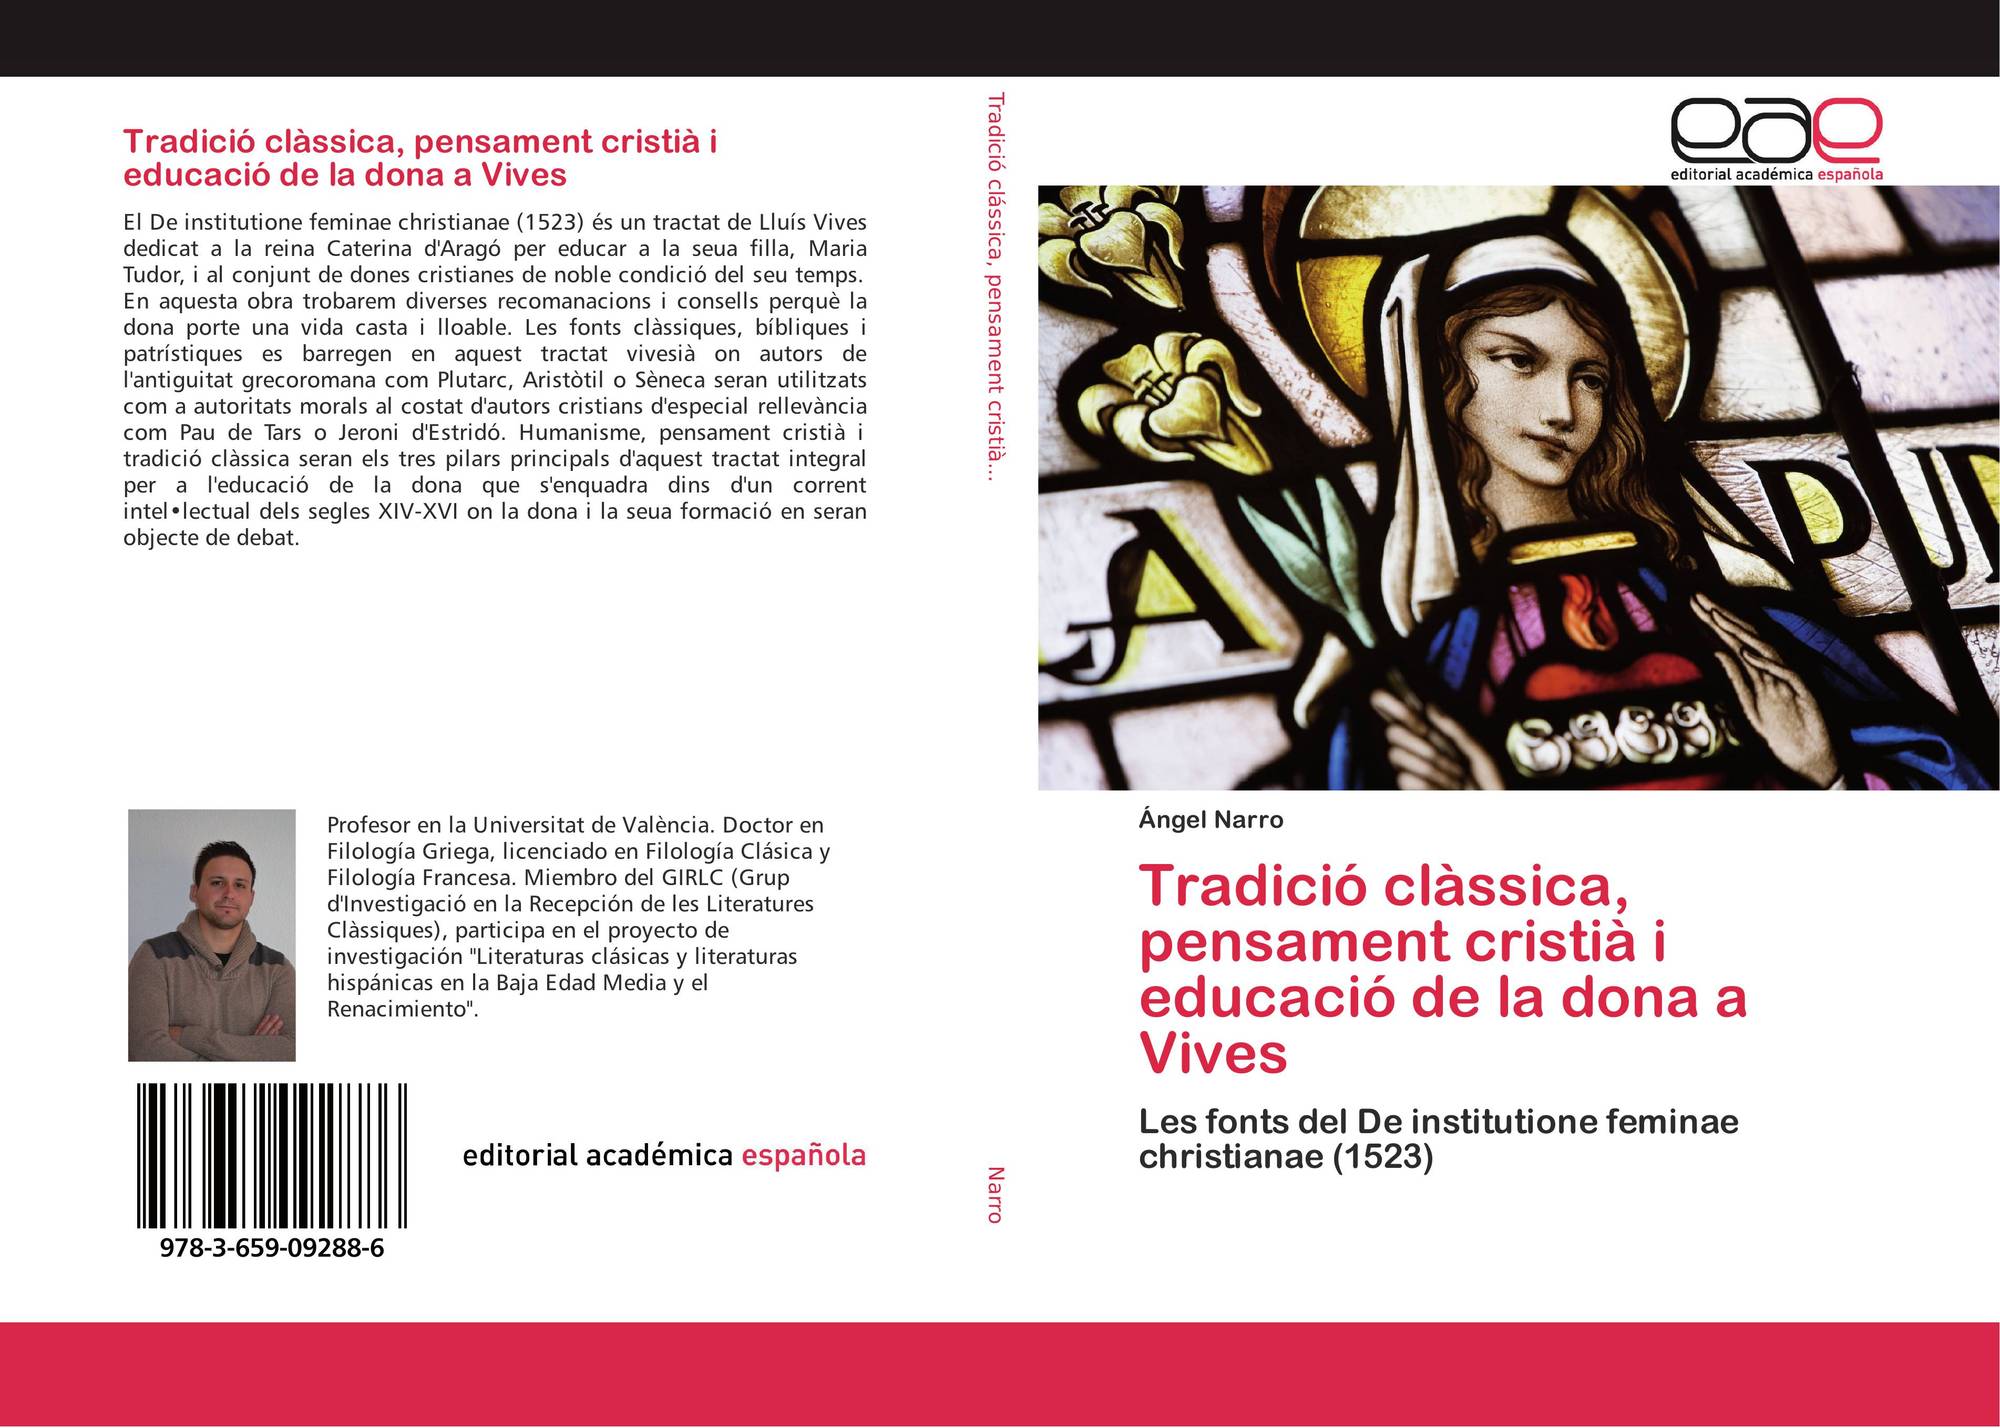 Narro, Á., Tradició clàssica, pensament cristià i educació de la dona a Vives